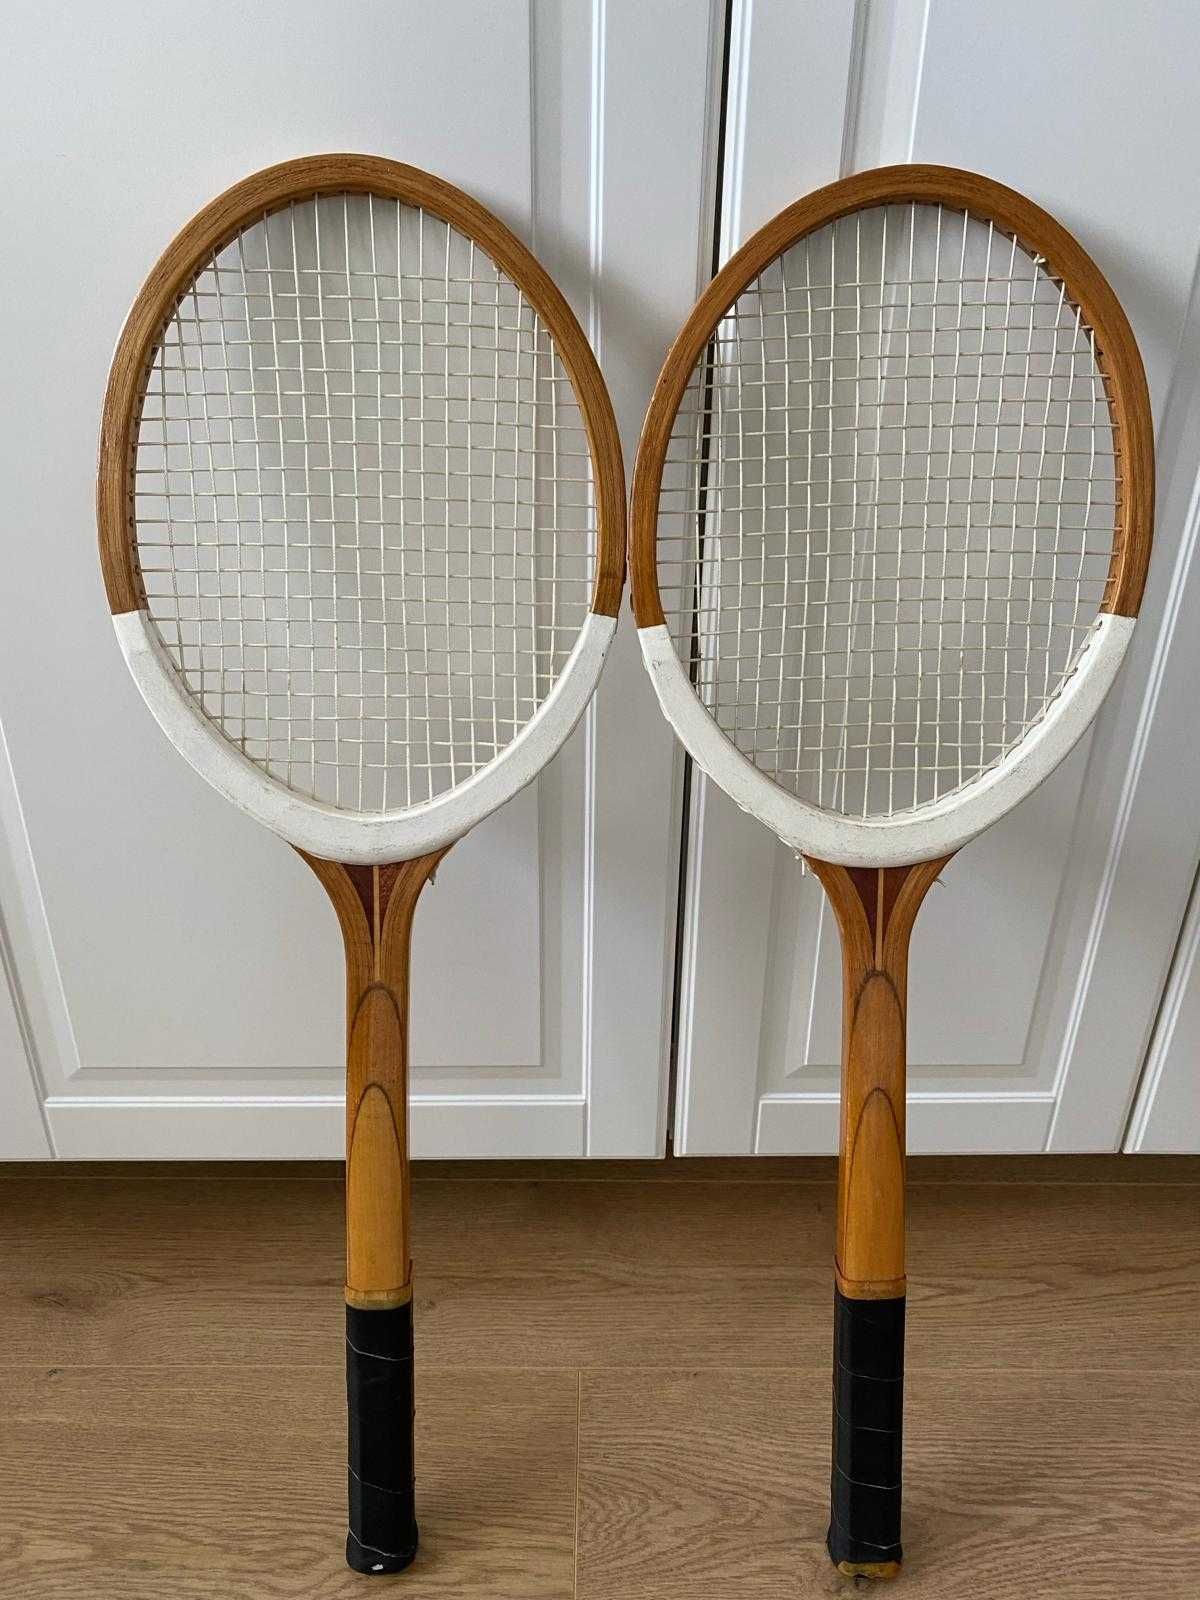 Rachete vechi de tenis de camp (din lemn) pt colectie